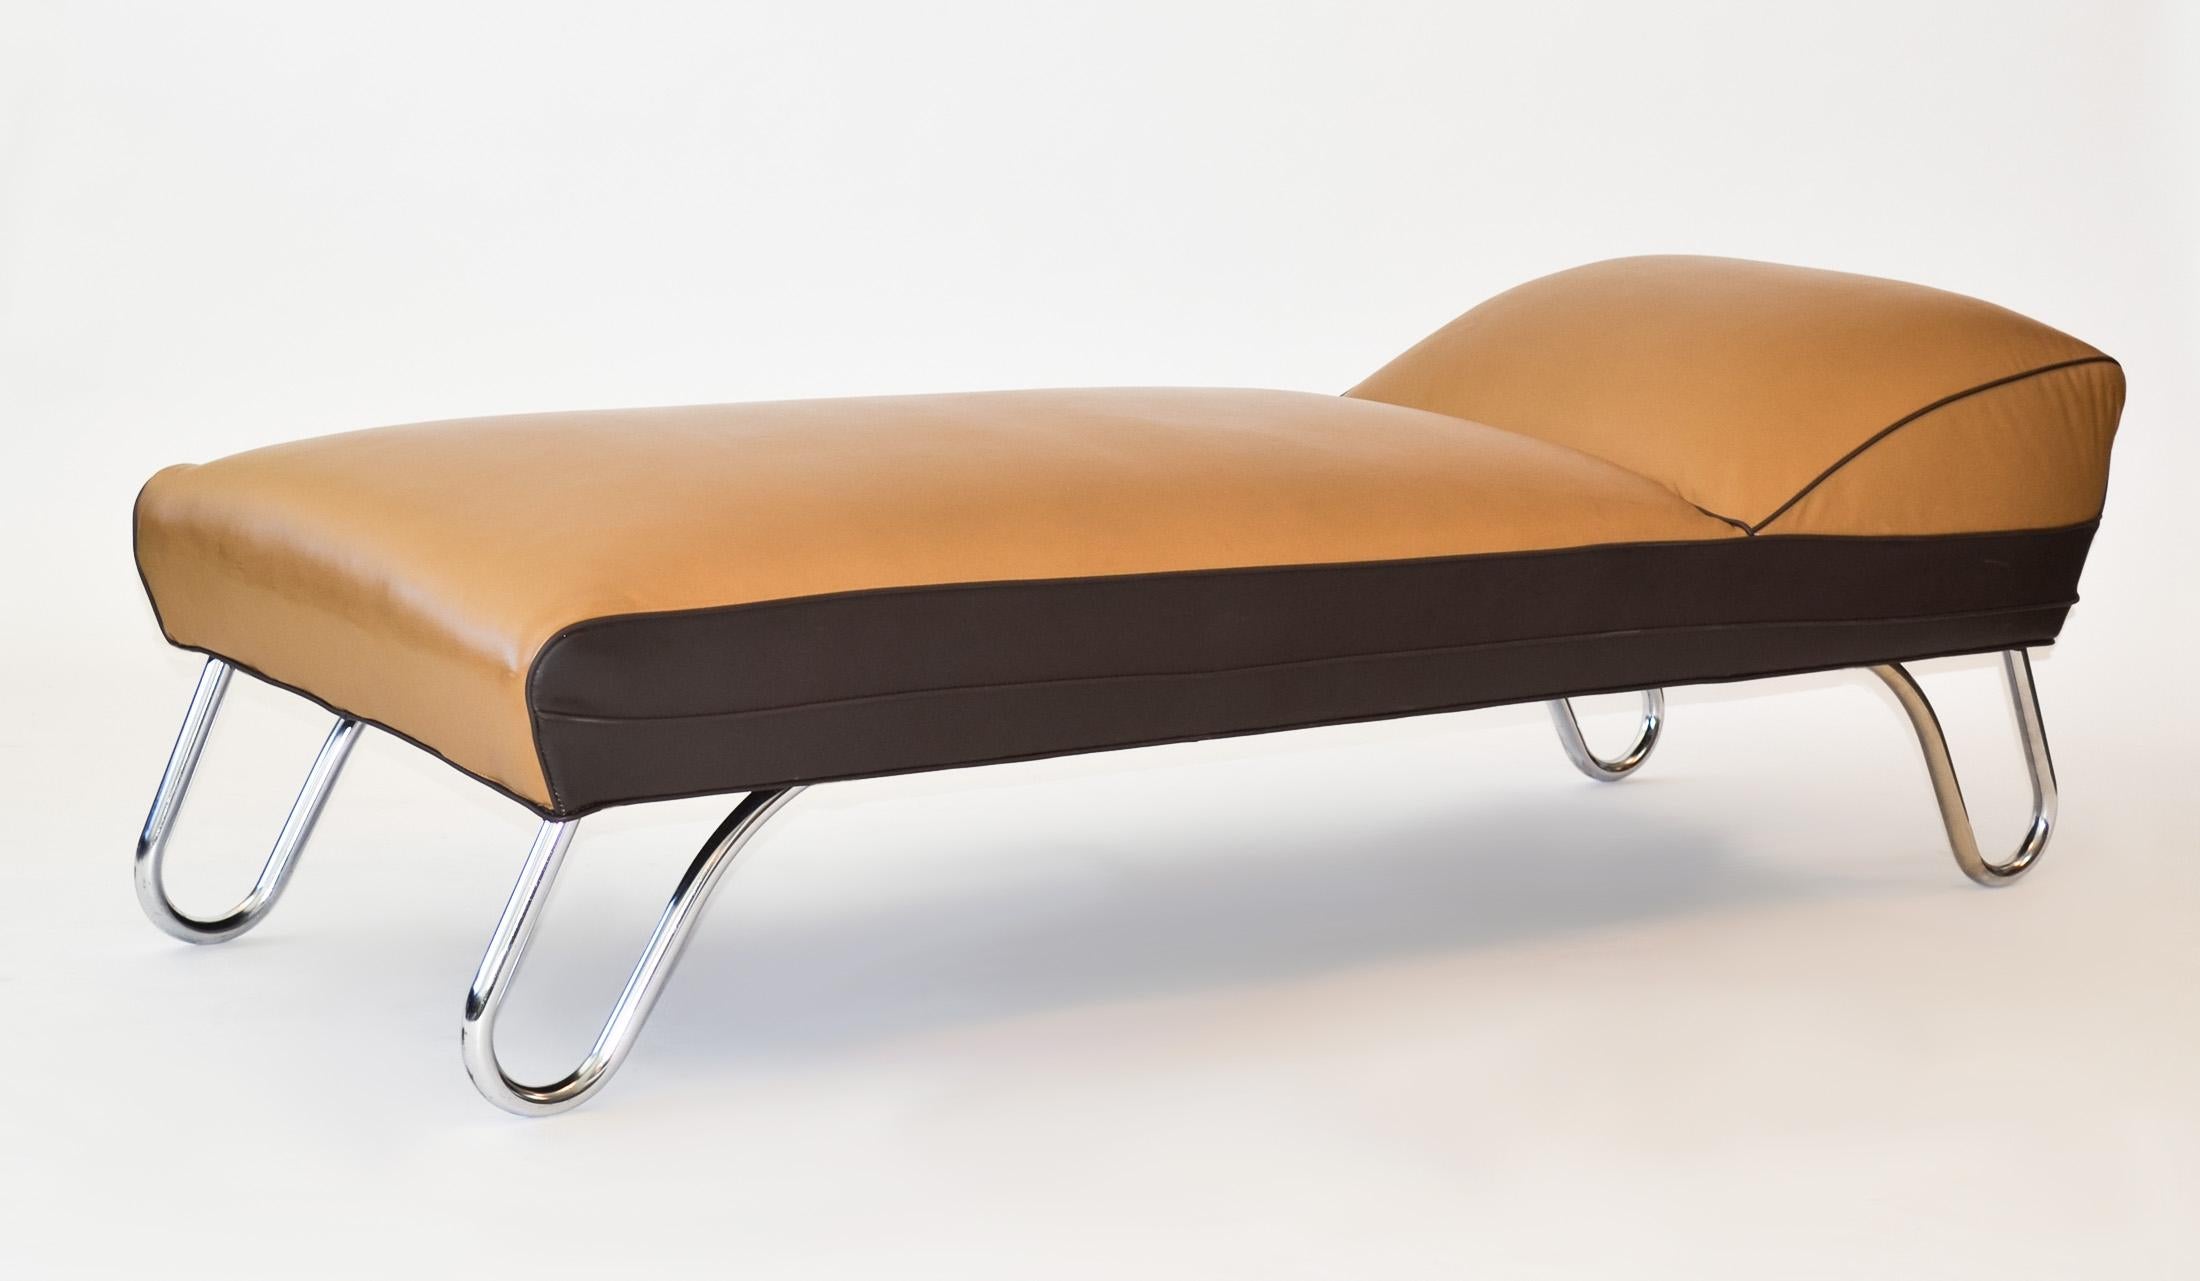 Méridienne Art Déco, KEM Weber pour Lloyd, design industriel profilé des années 1930
Chaise longue ou lit de jour 